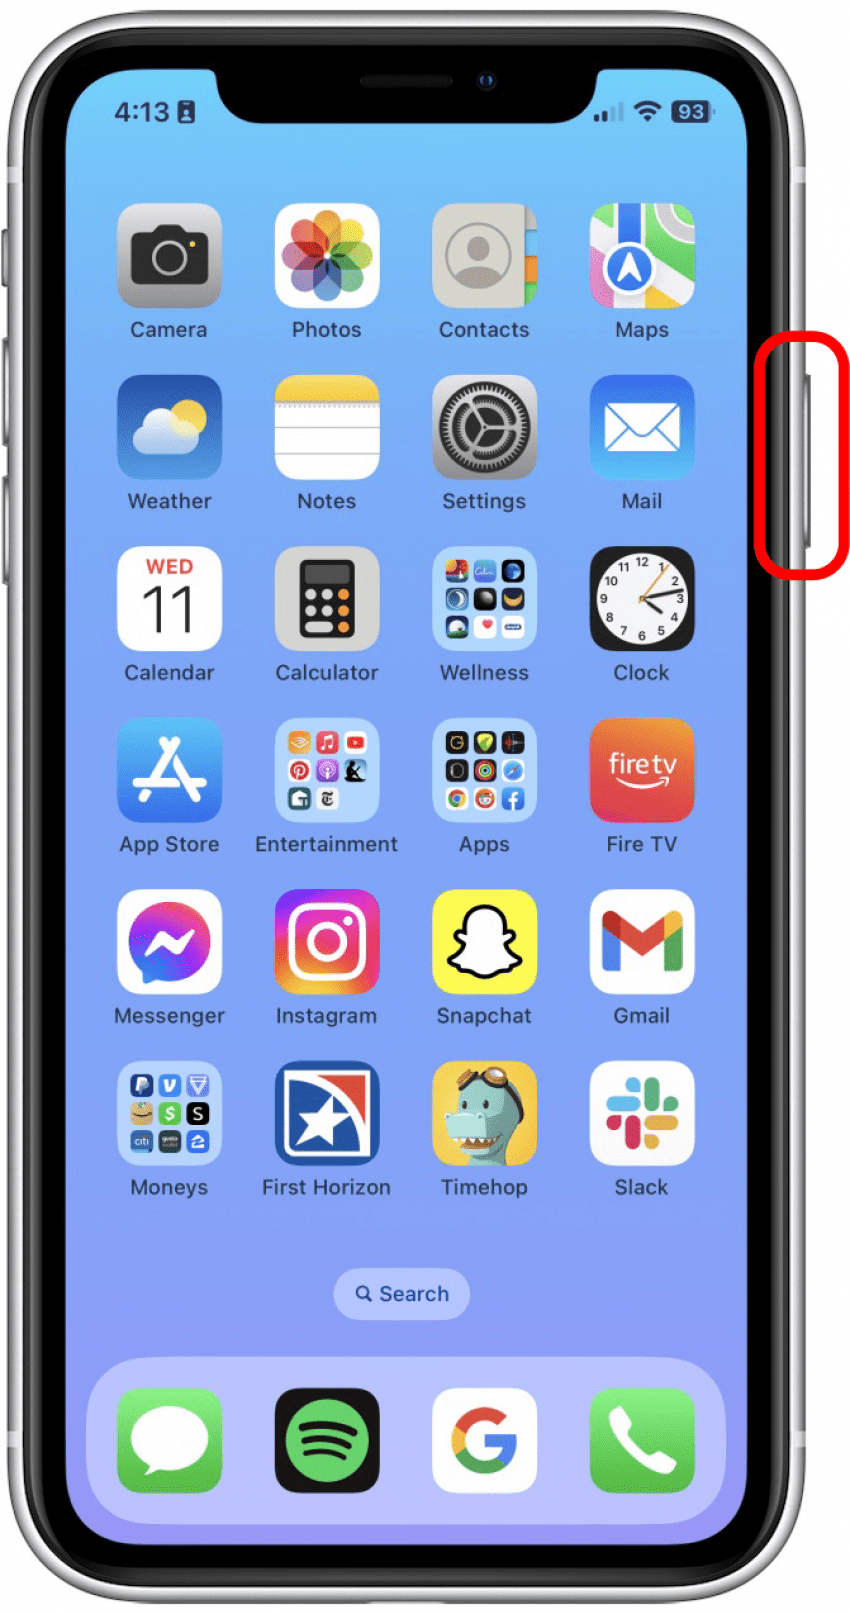 Mantenga presionado el botón de bloqueo hasta que aparezca el logotipo de Apple. 